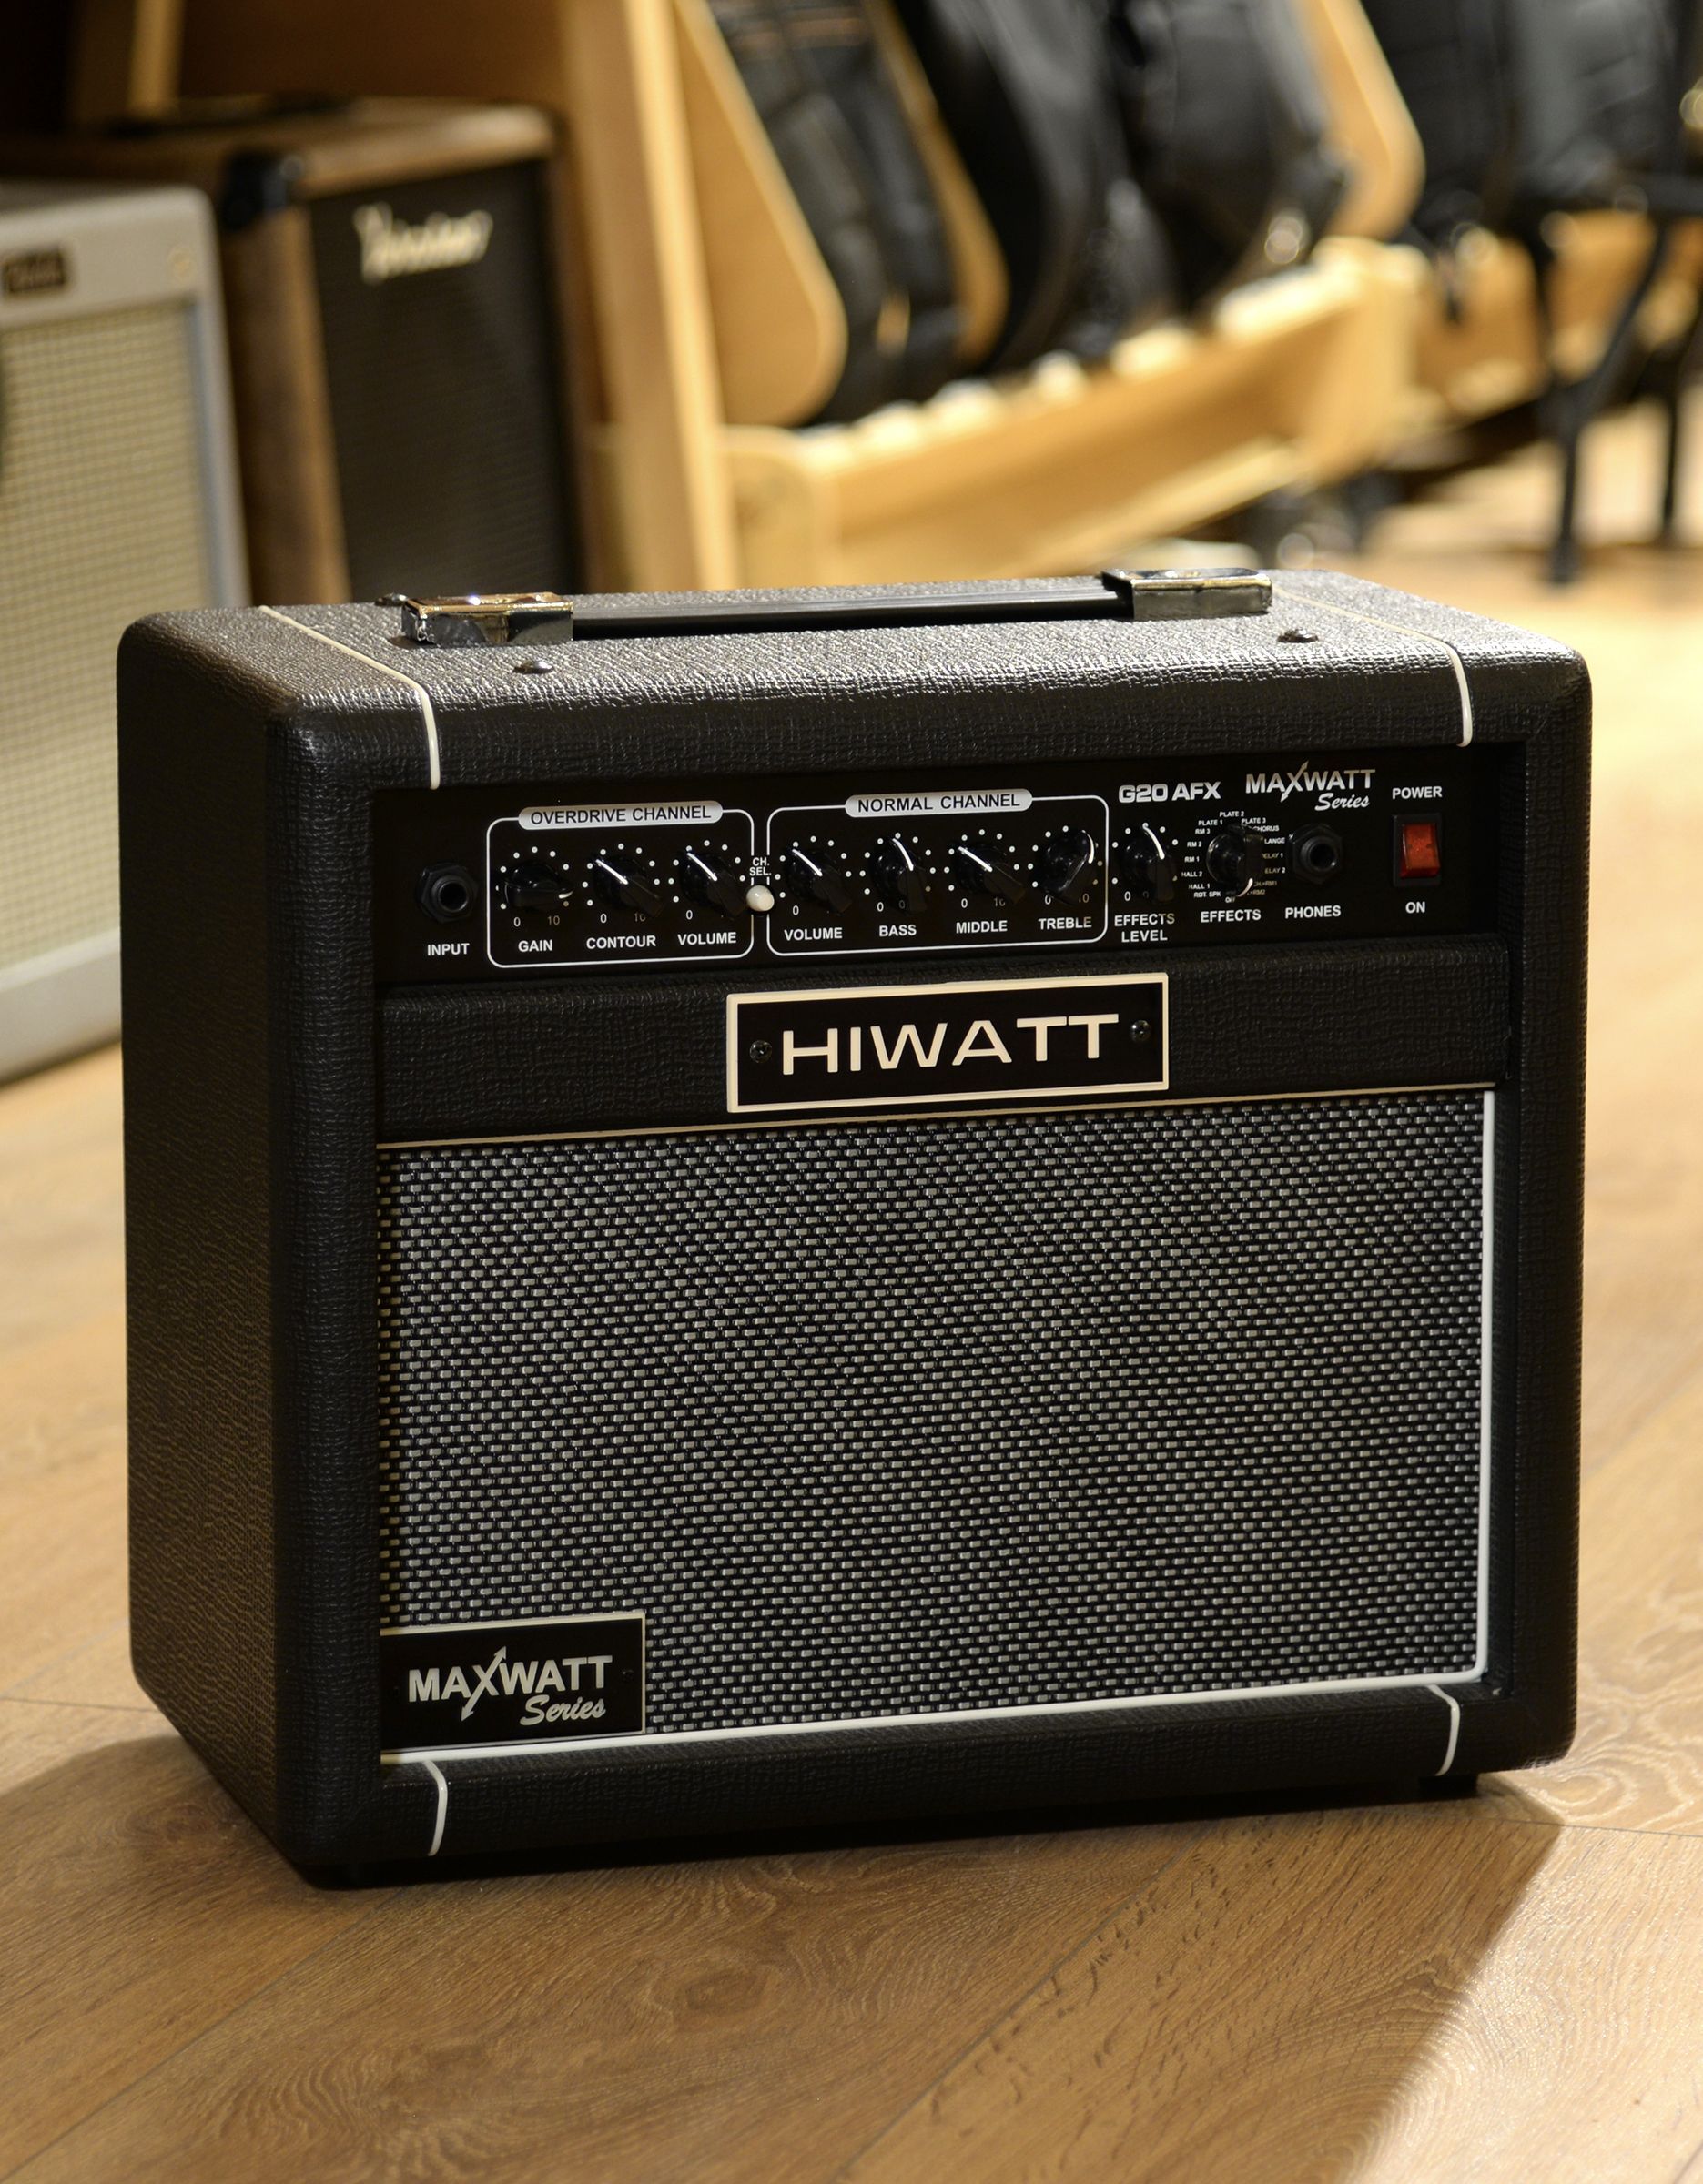 Комбоусилитель для электрогитары HIWATT MAXWATT G20 AFX, 20 Вт, 1Х8" Hiwatt High Performance Speaker - купить в "Гитарном Клубе"